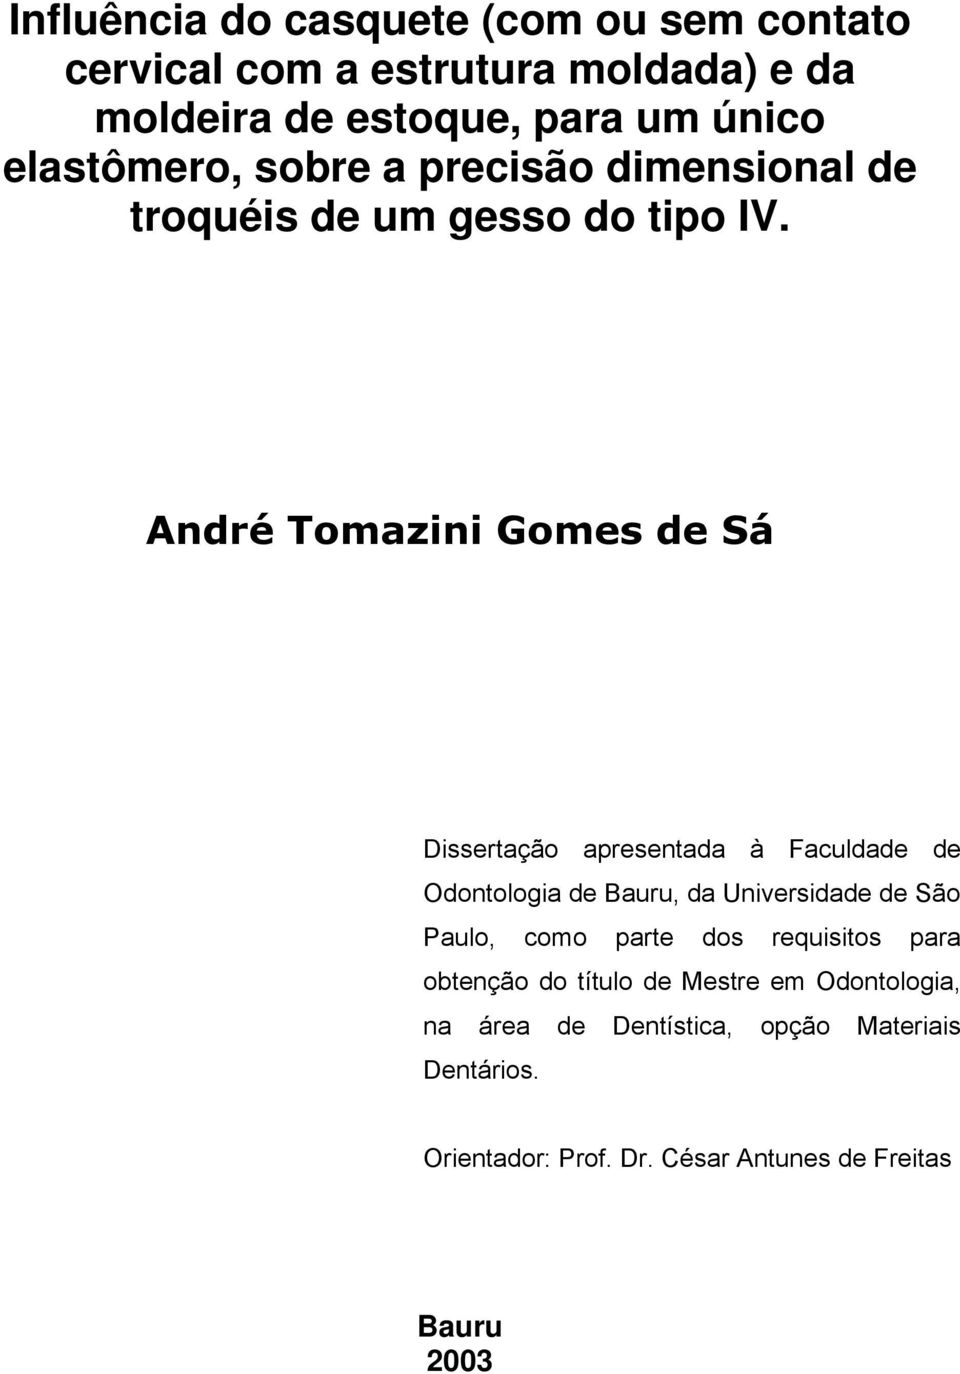 André Tomazini Gomes de Sá Dissertação apresentada à Faculdade de Odontologia de Bauru, da Universidade de São Paulo, como